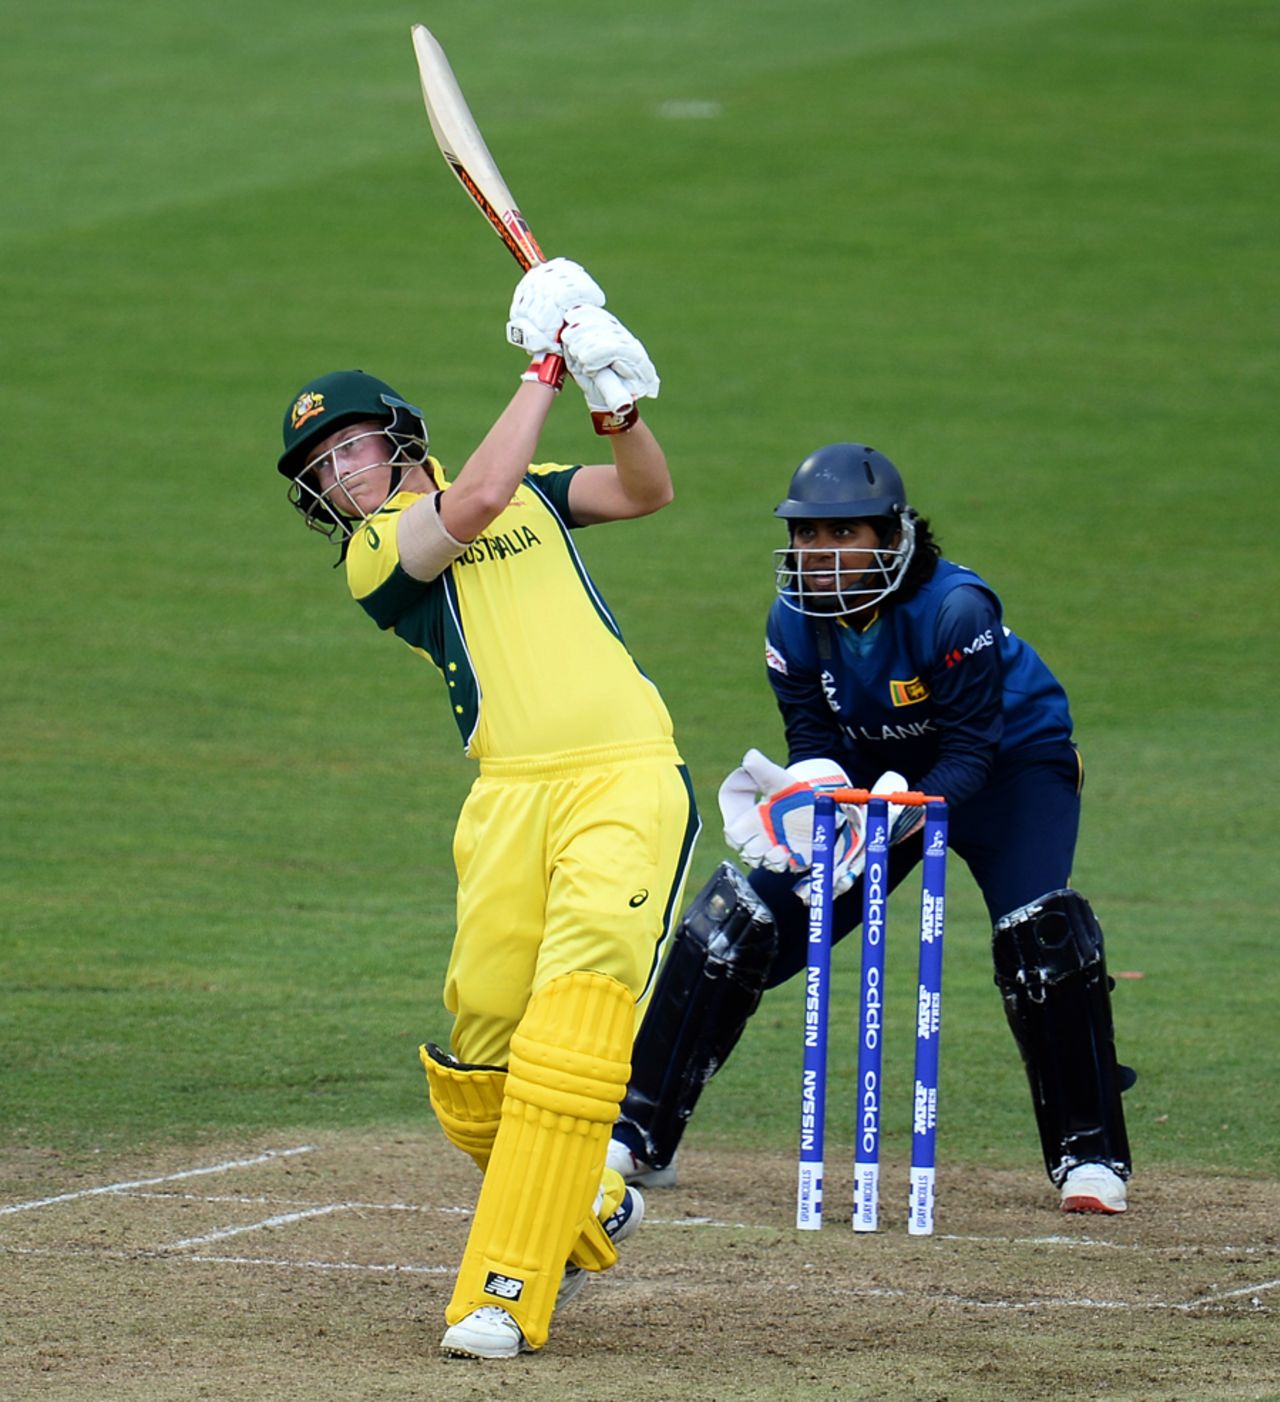 Meg Lanning goes over the top, Australia v Sri Lanka, Women's World Cup, Bristol, June 29, 2017